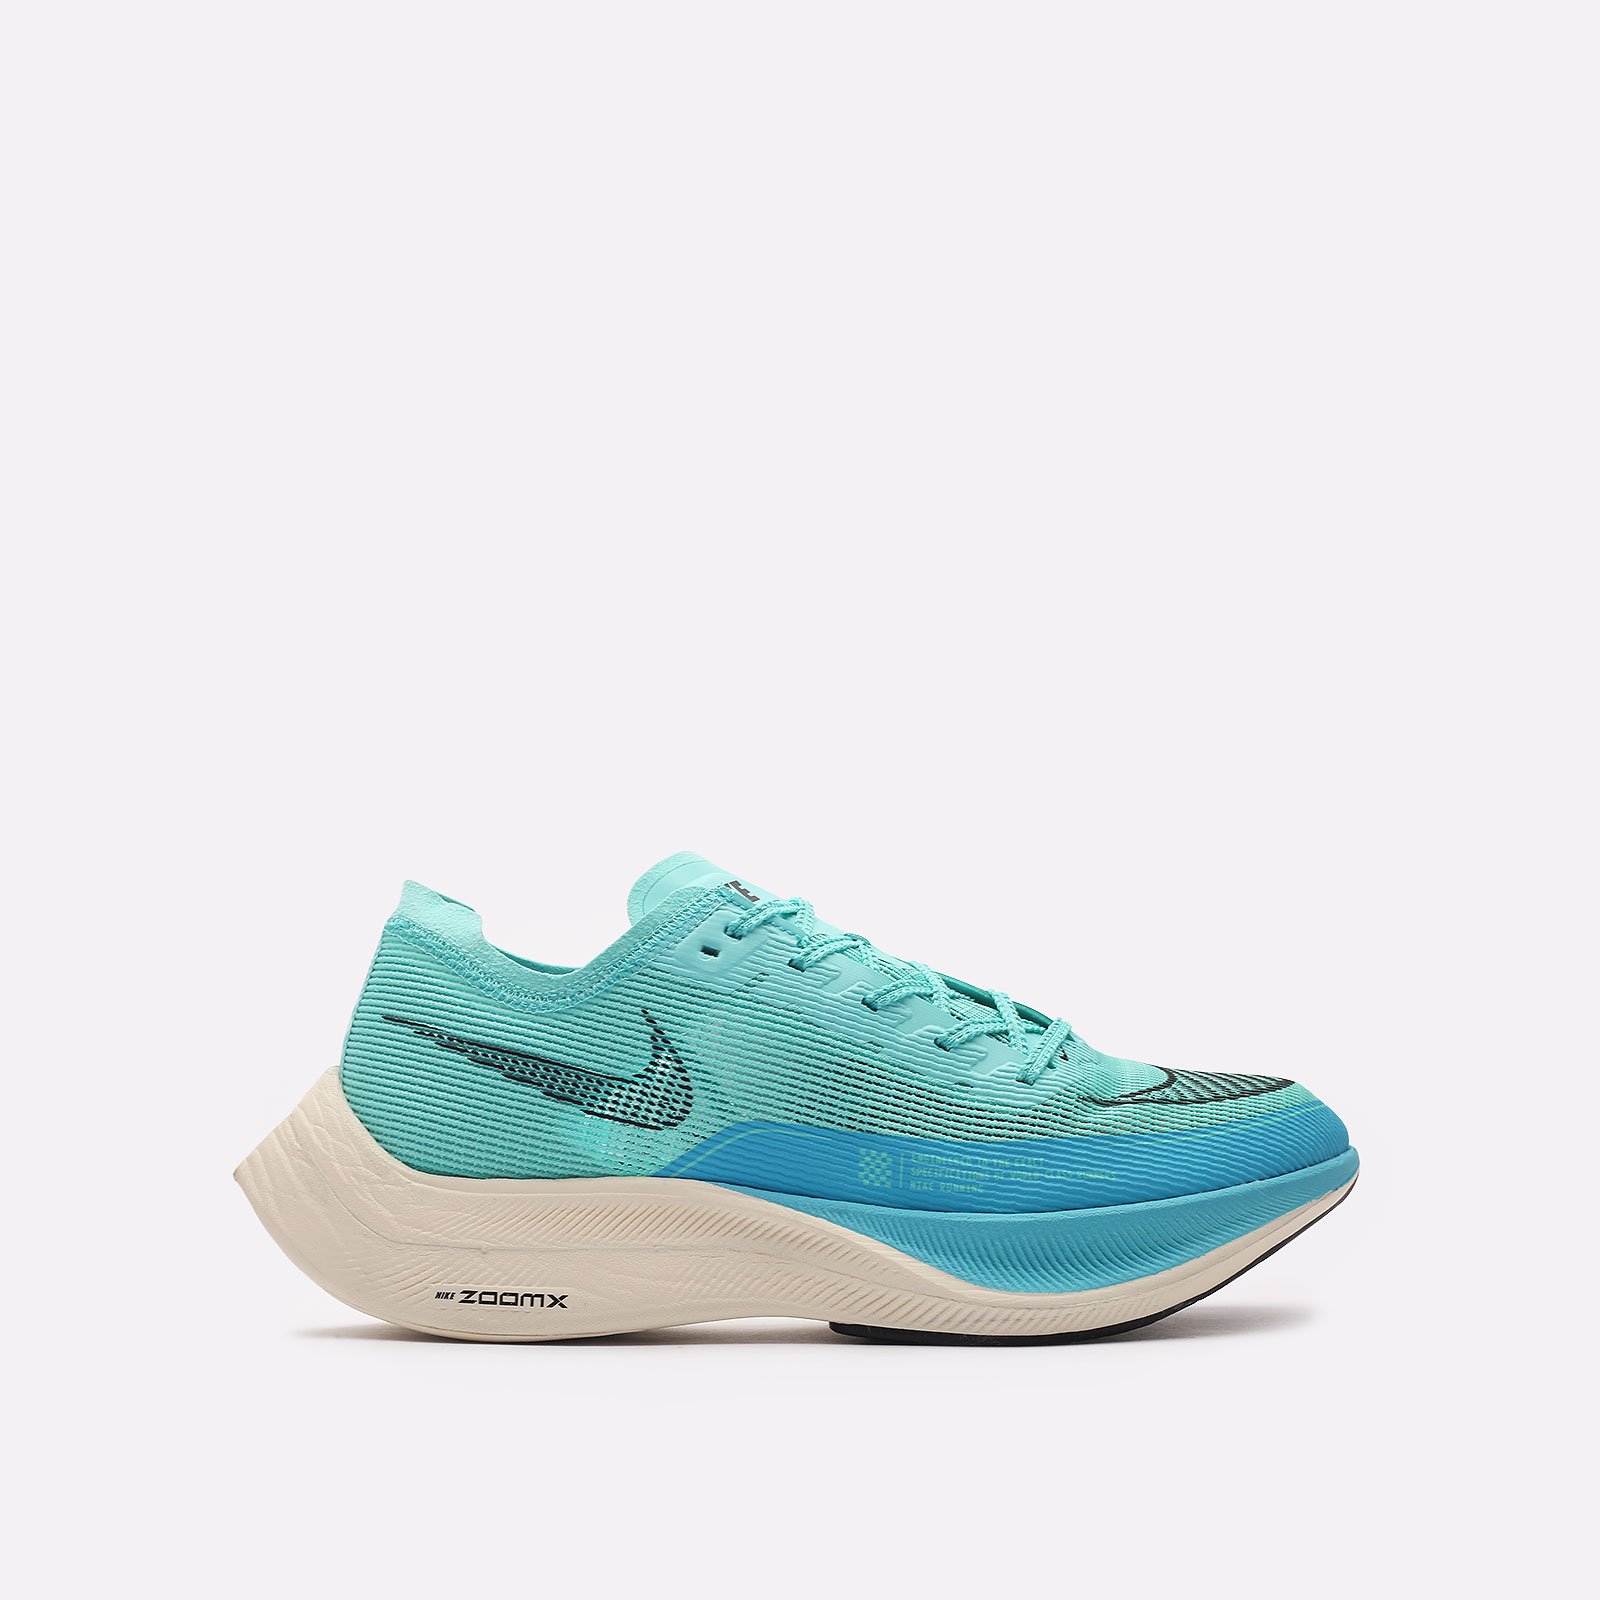 мужские кроссовки Nike ZoomX Vaporfly  (CU4111-300)  - цена, описание, фото 1